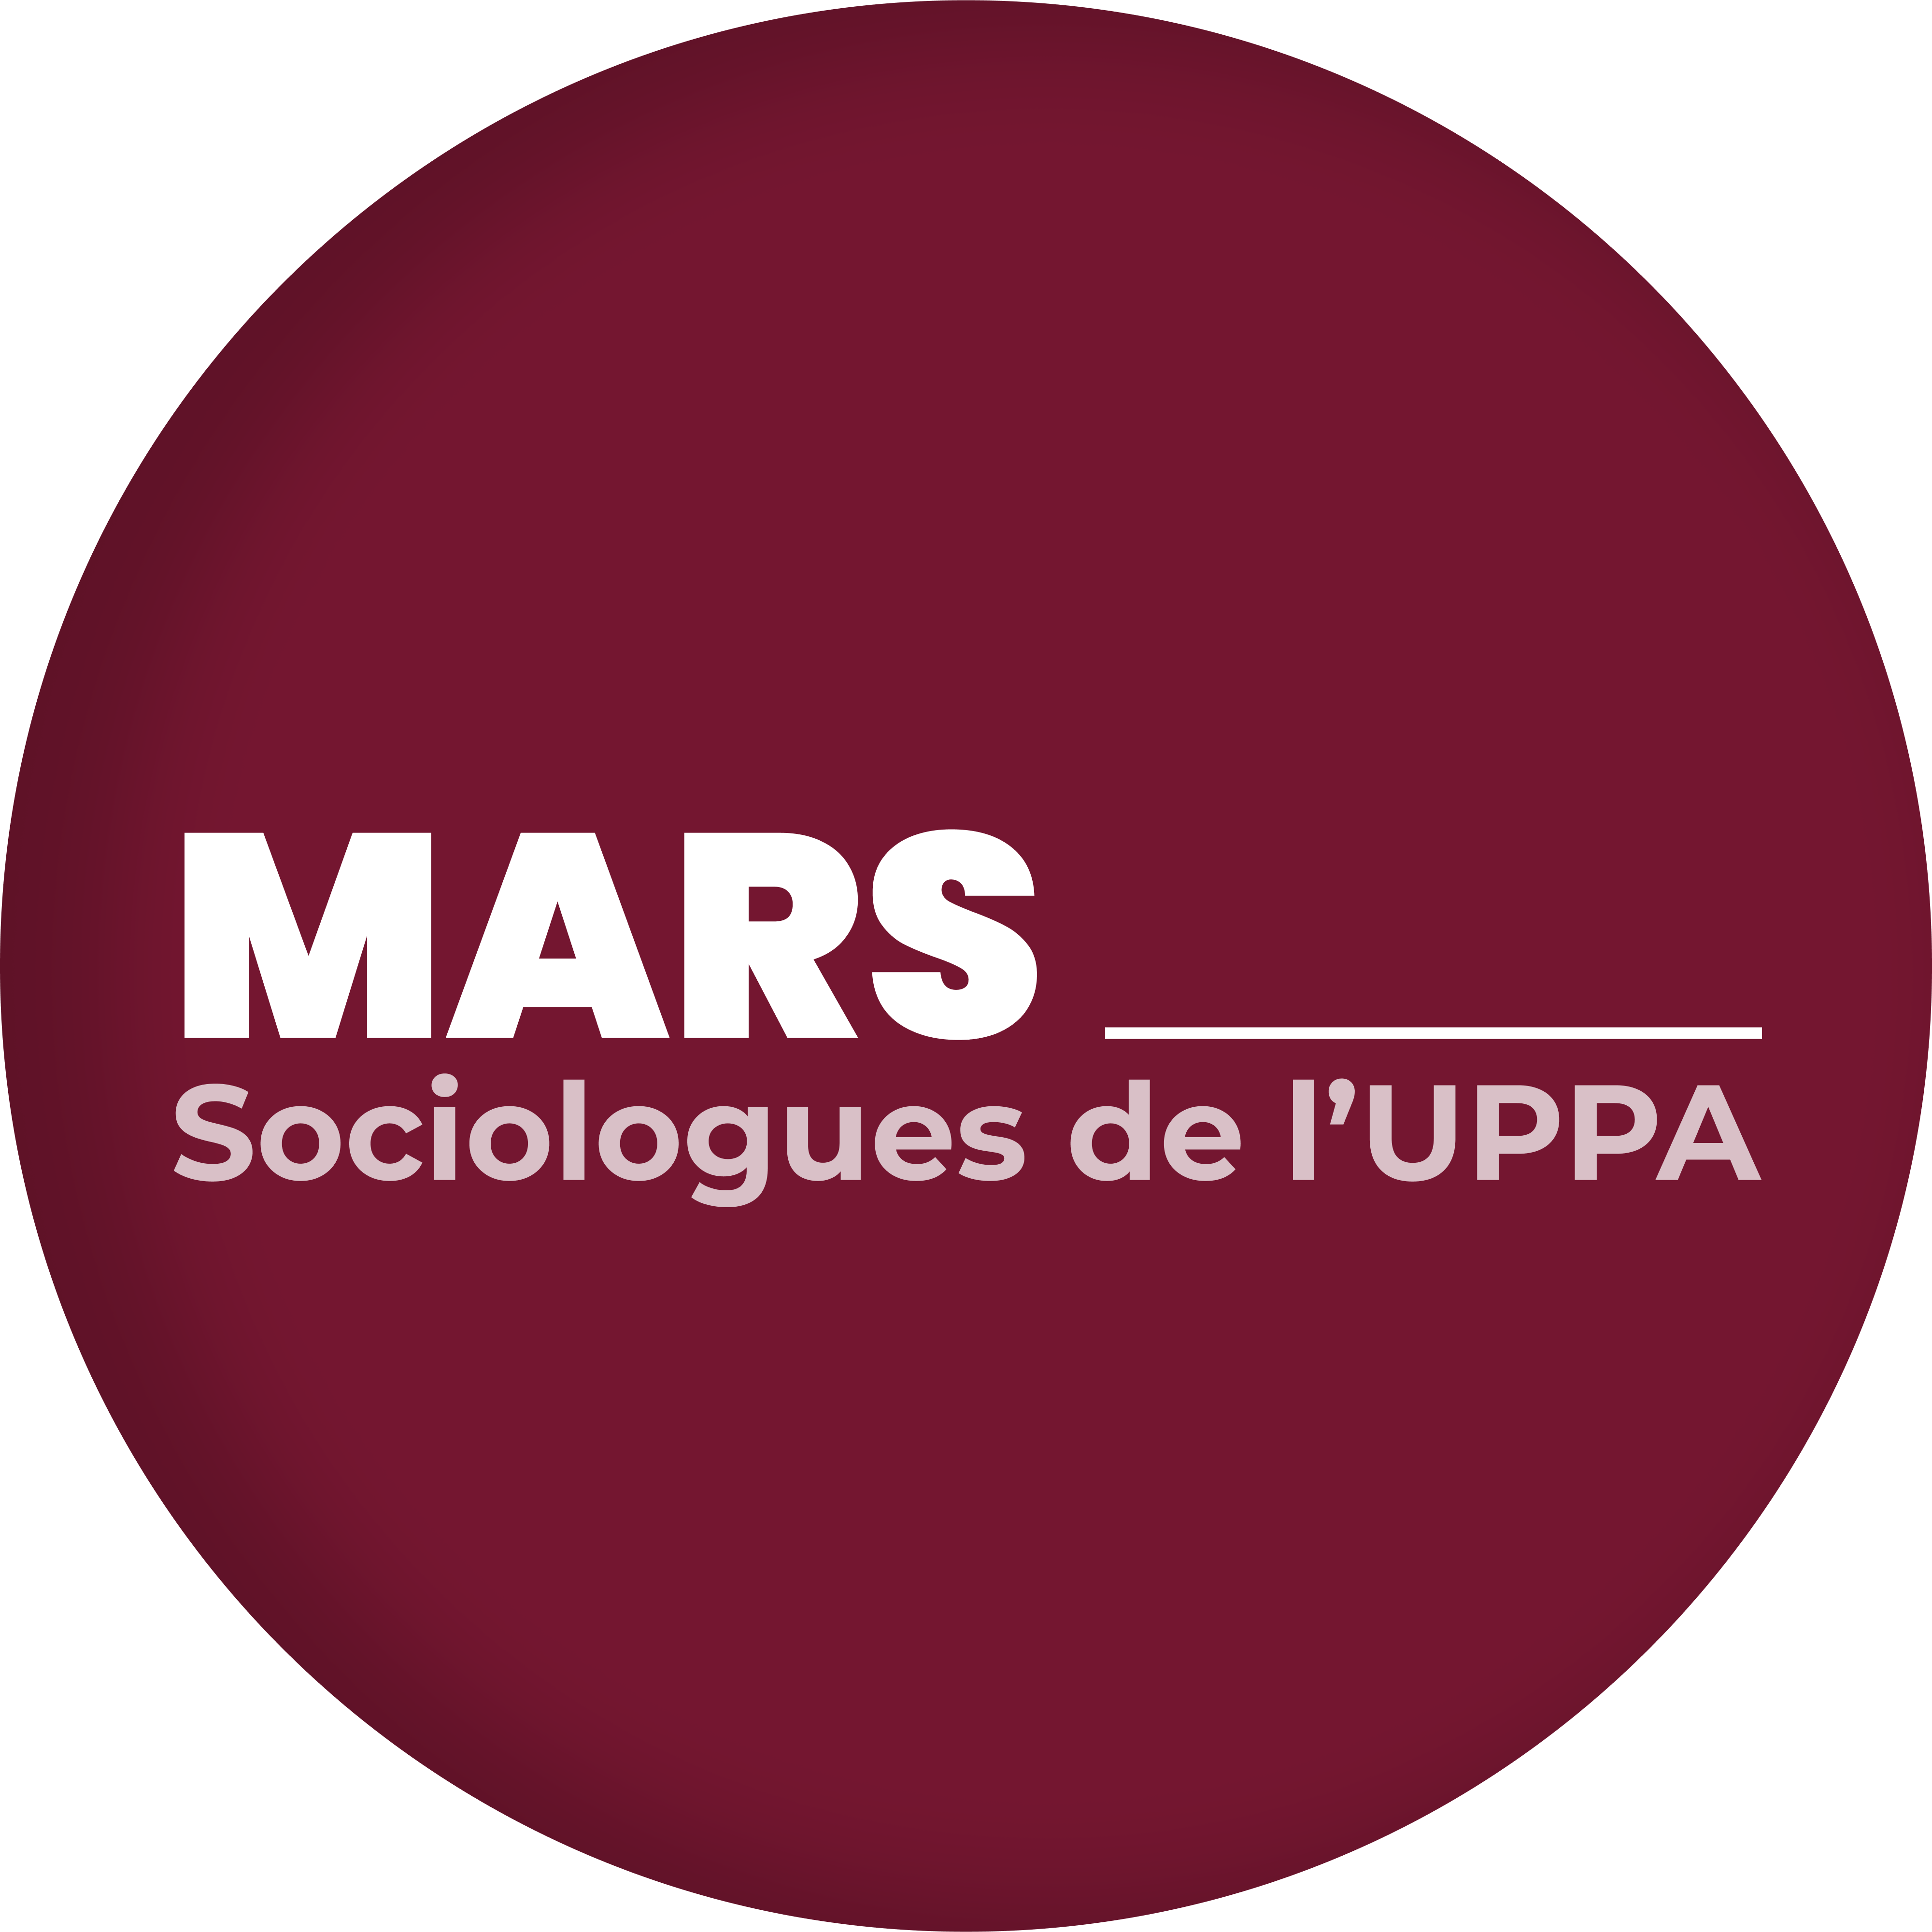 MARS - Association des Sociologues de l’UPPA